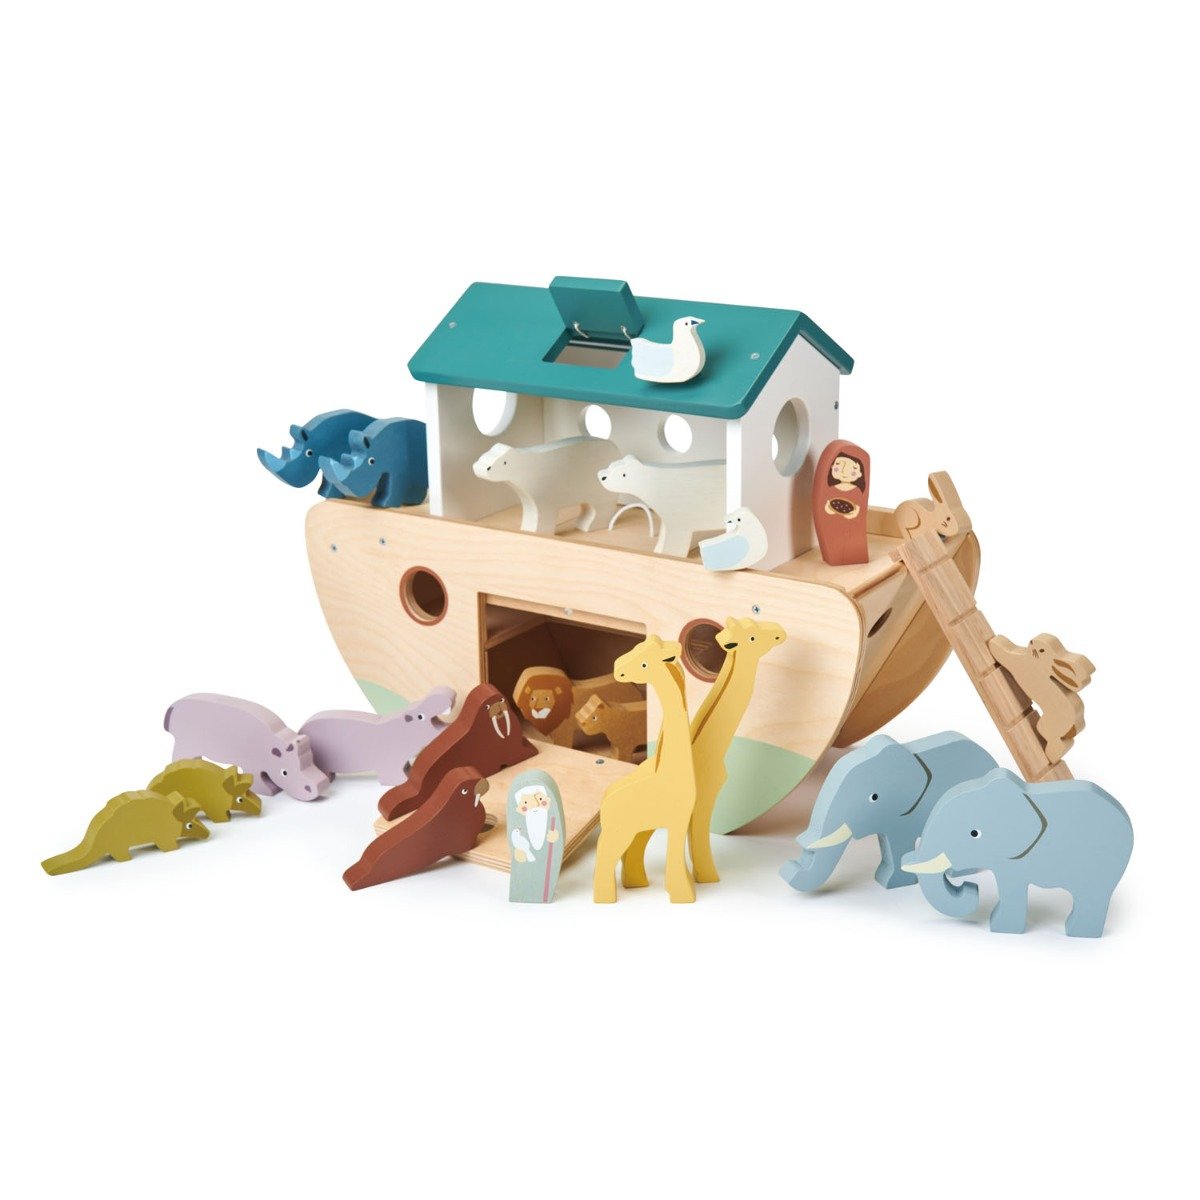 Arca lui Noe din lemn, Tender Leaf Toys, 25 piese Arca